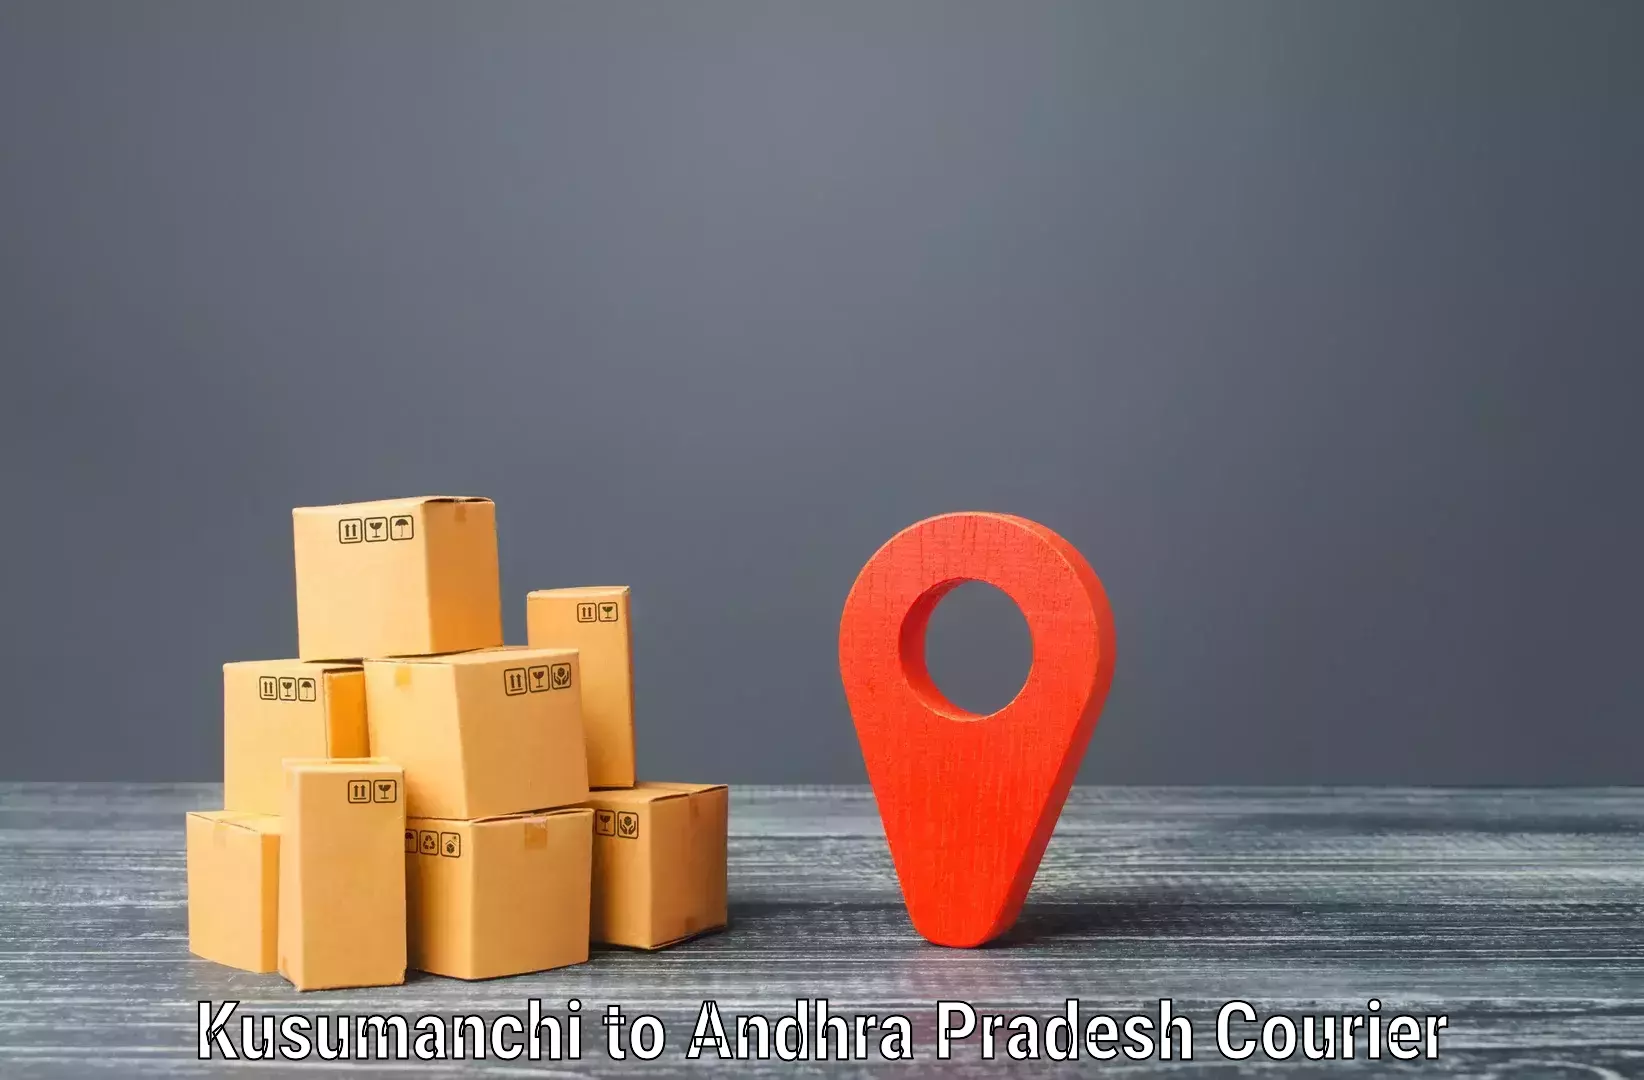 Ground shipping Kusumanchi to NIT Andhra Pradesh